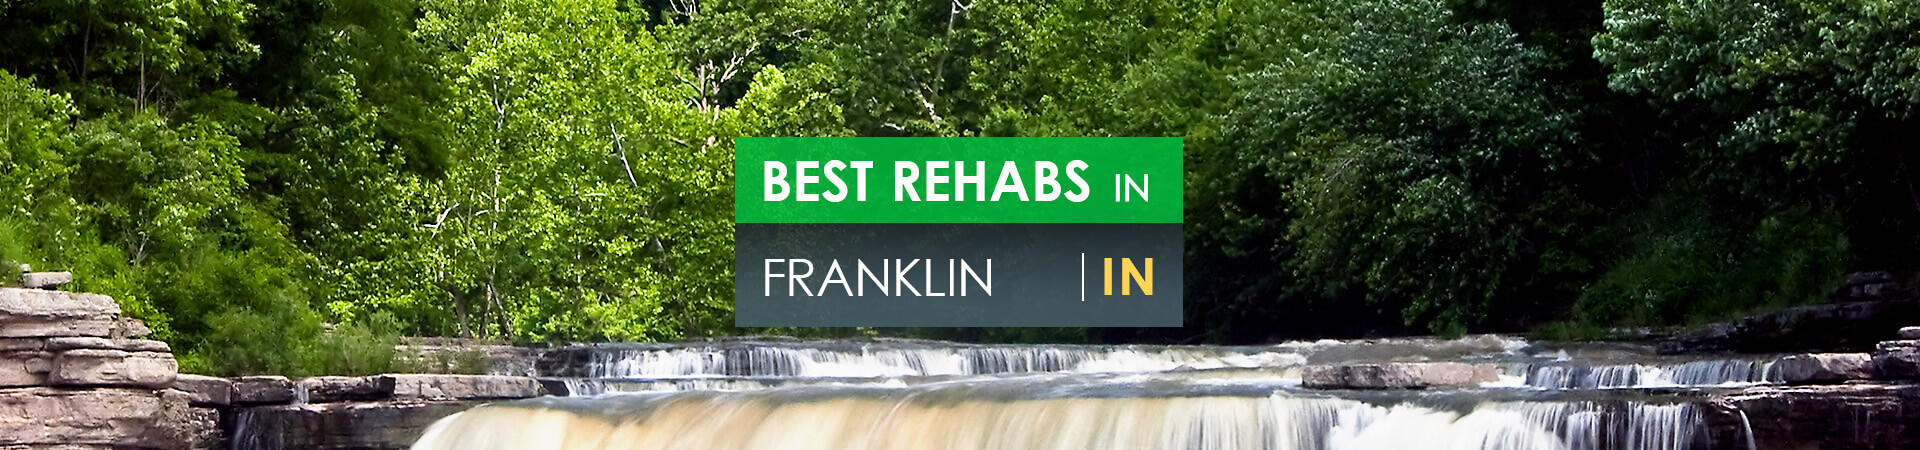 Best rehabs in Franklin, IN